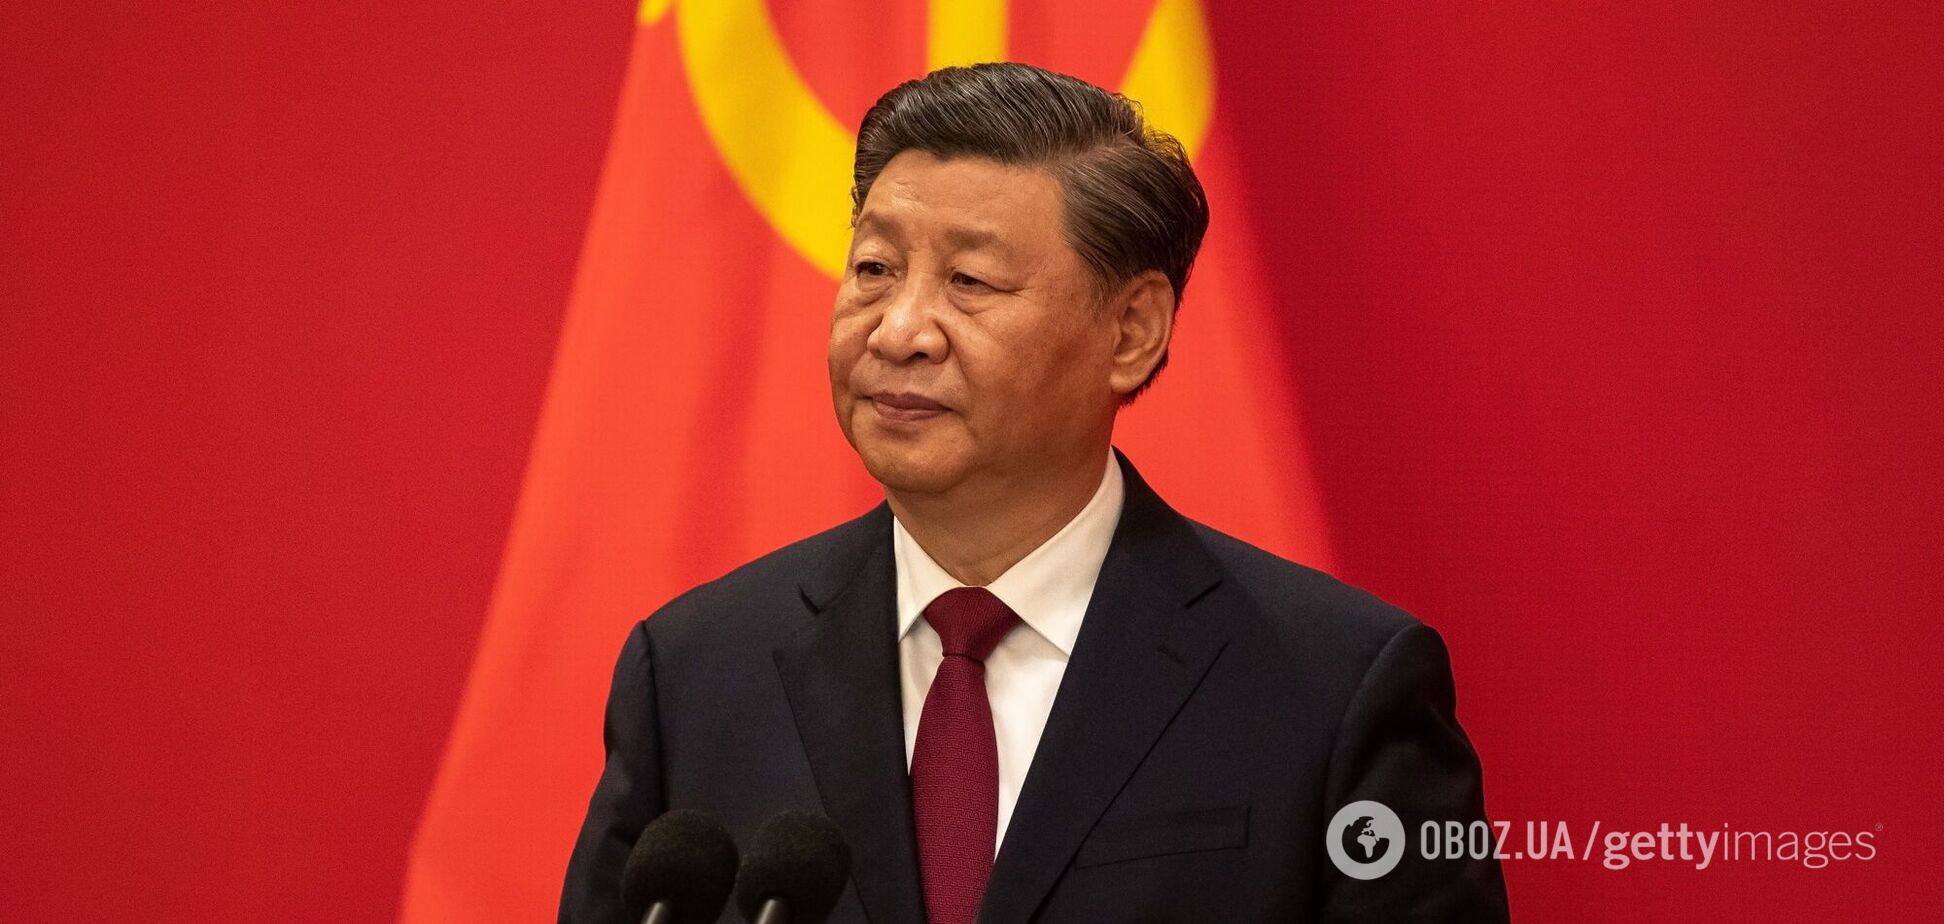 Положение Пекина усложняется: эксперт объяснила, чем США могут давить на Китай